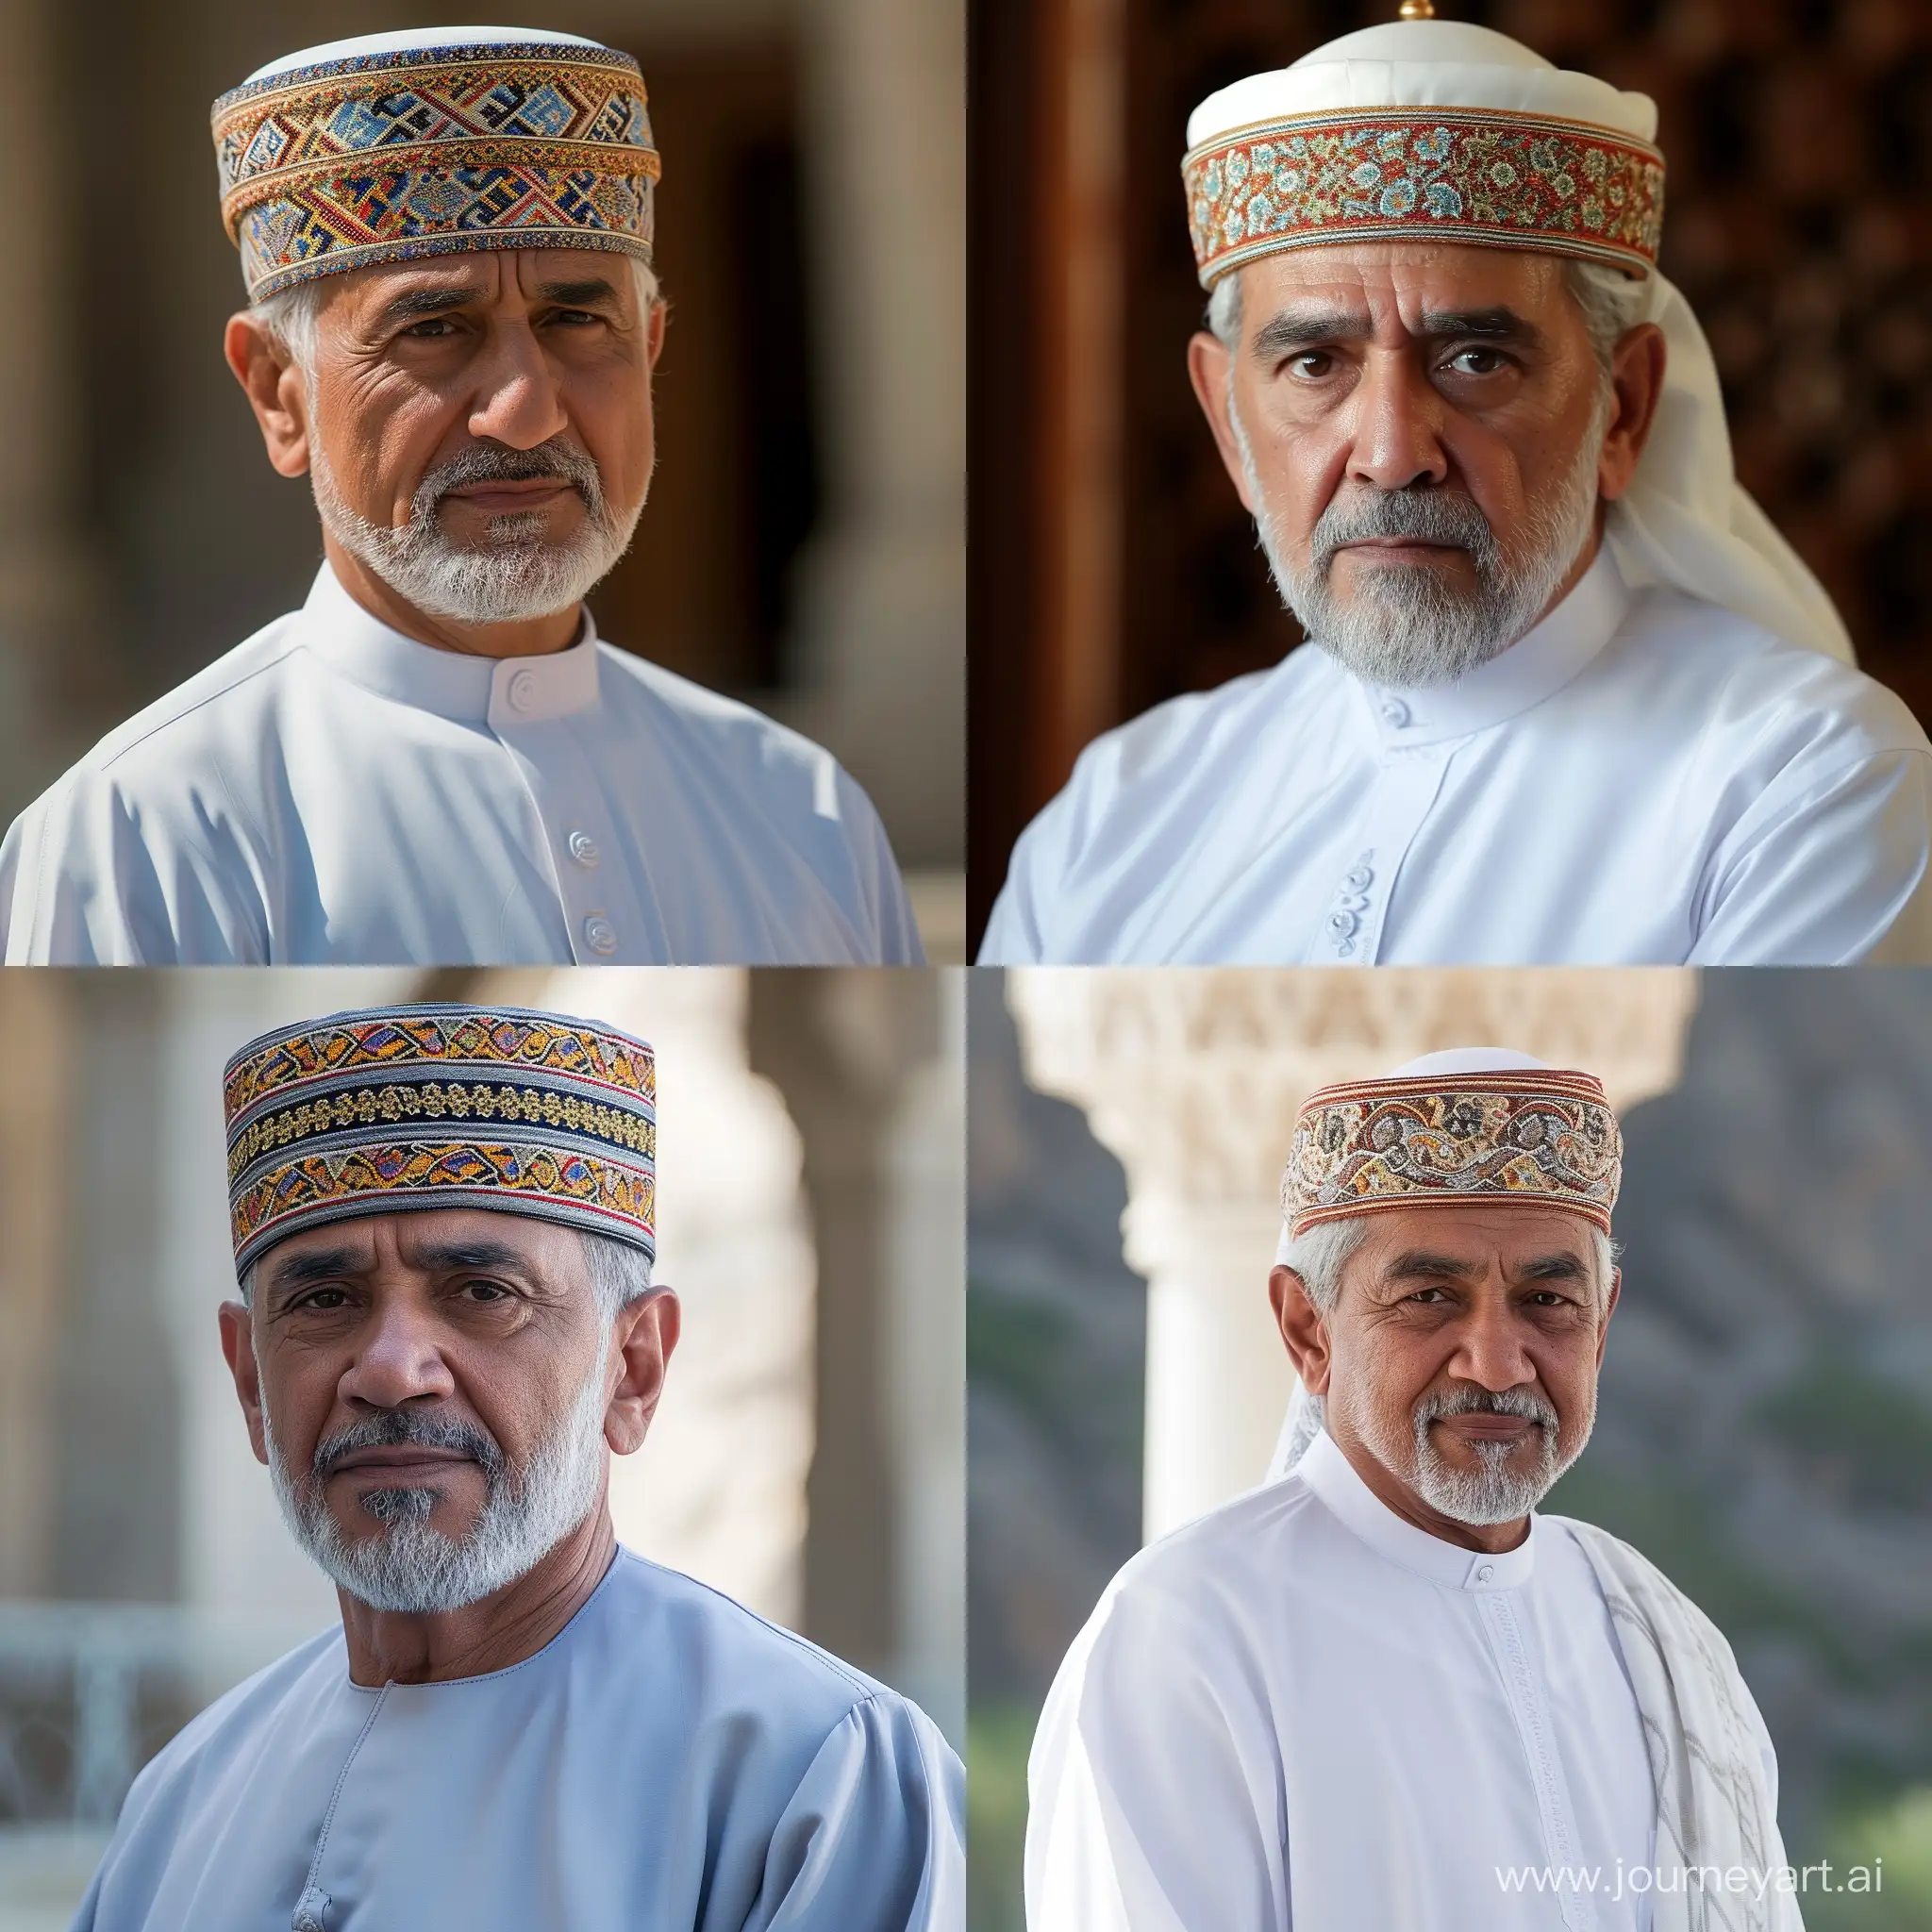 Sultan-Haitham-bin-Tariq-Al-Said-of-Oman-in-Regal-Attire